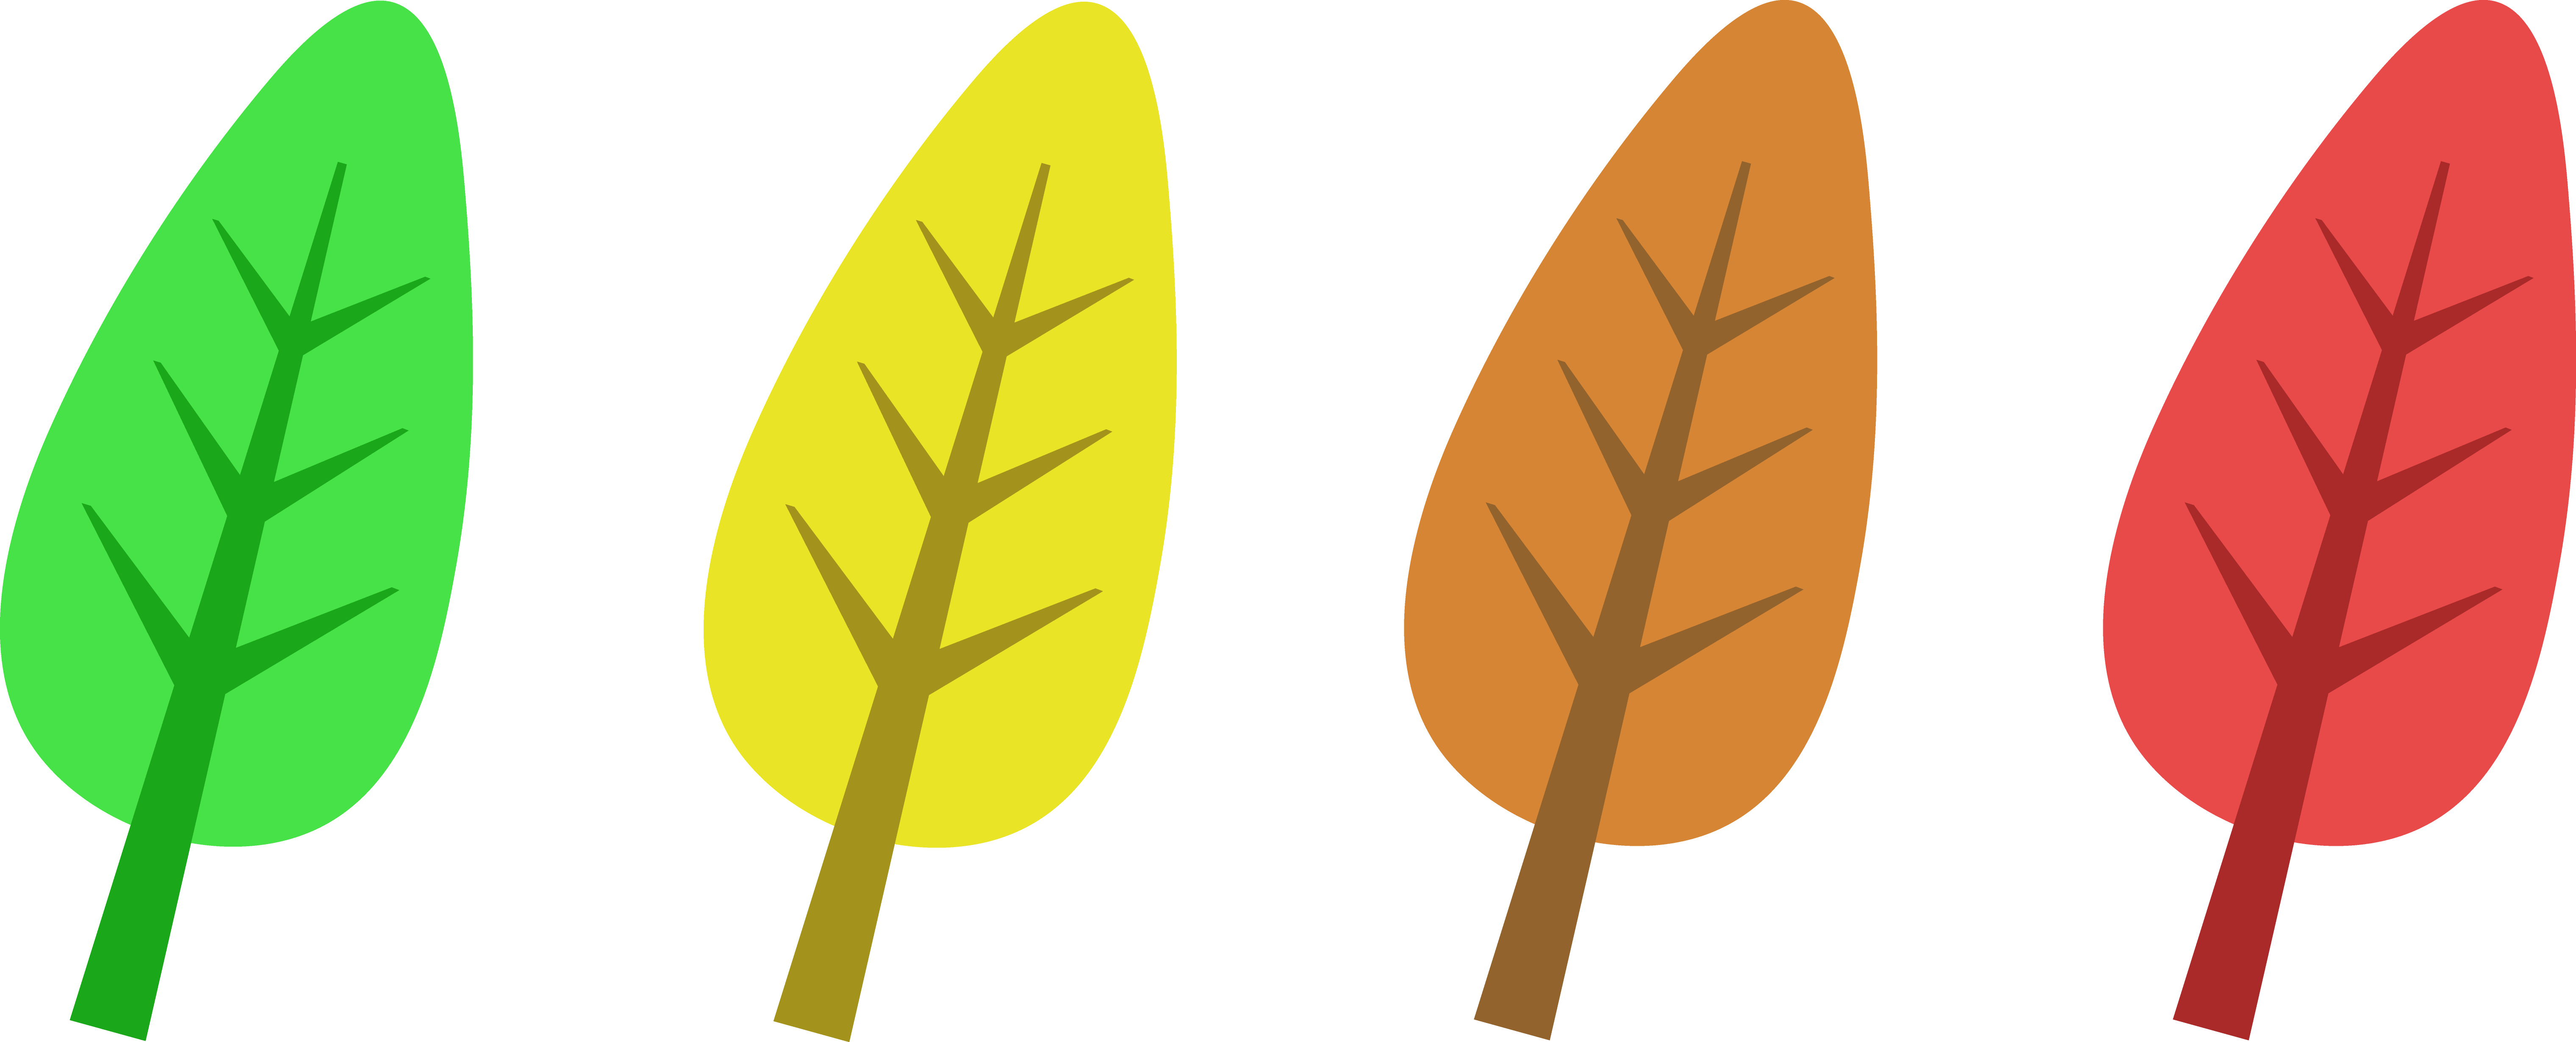 Leaf clipart clipart cliparts - Clipart Leaves